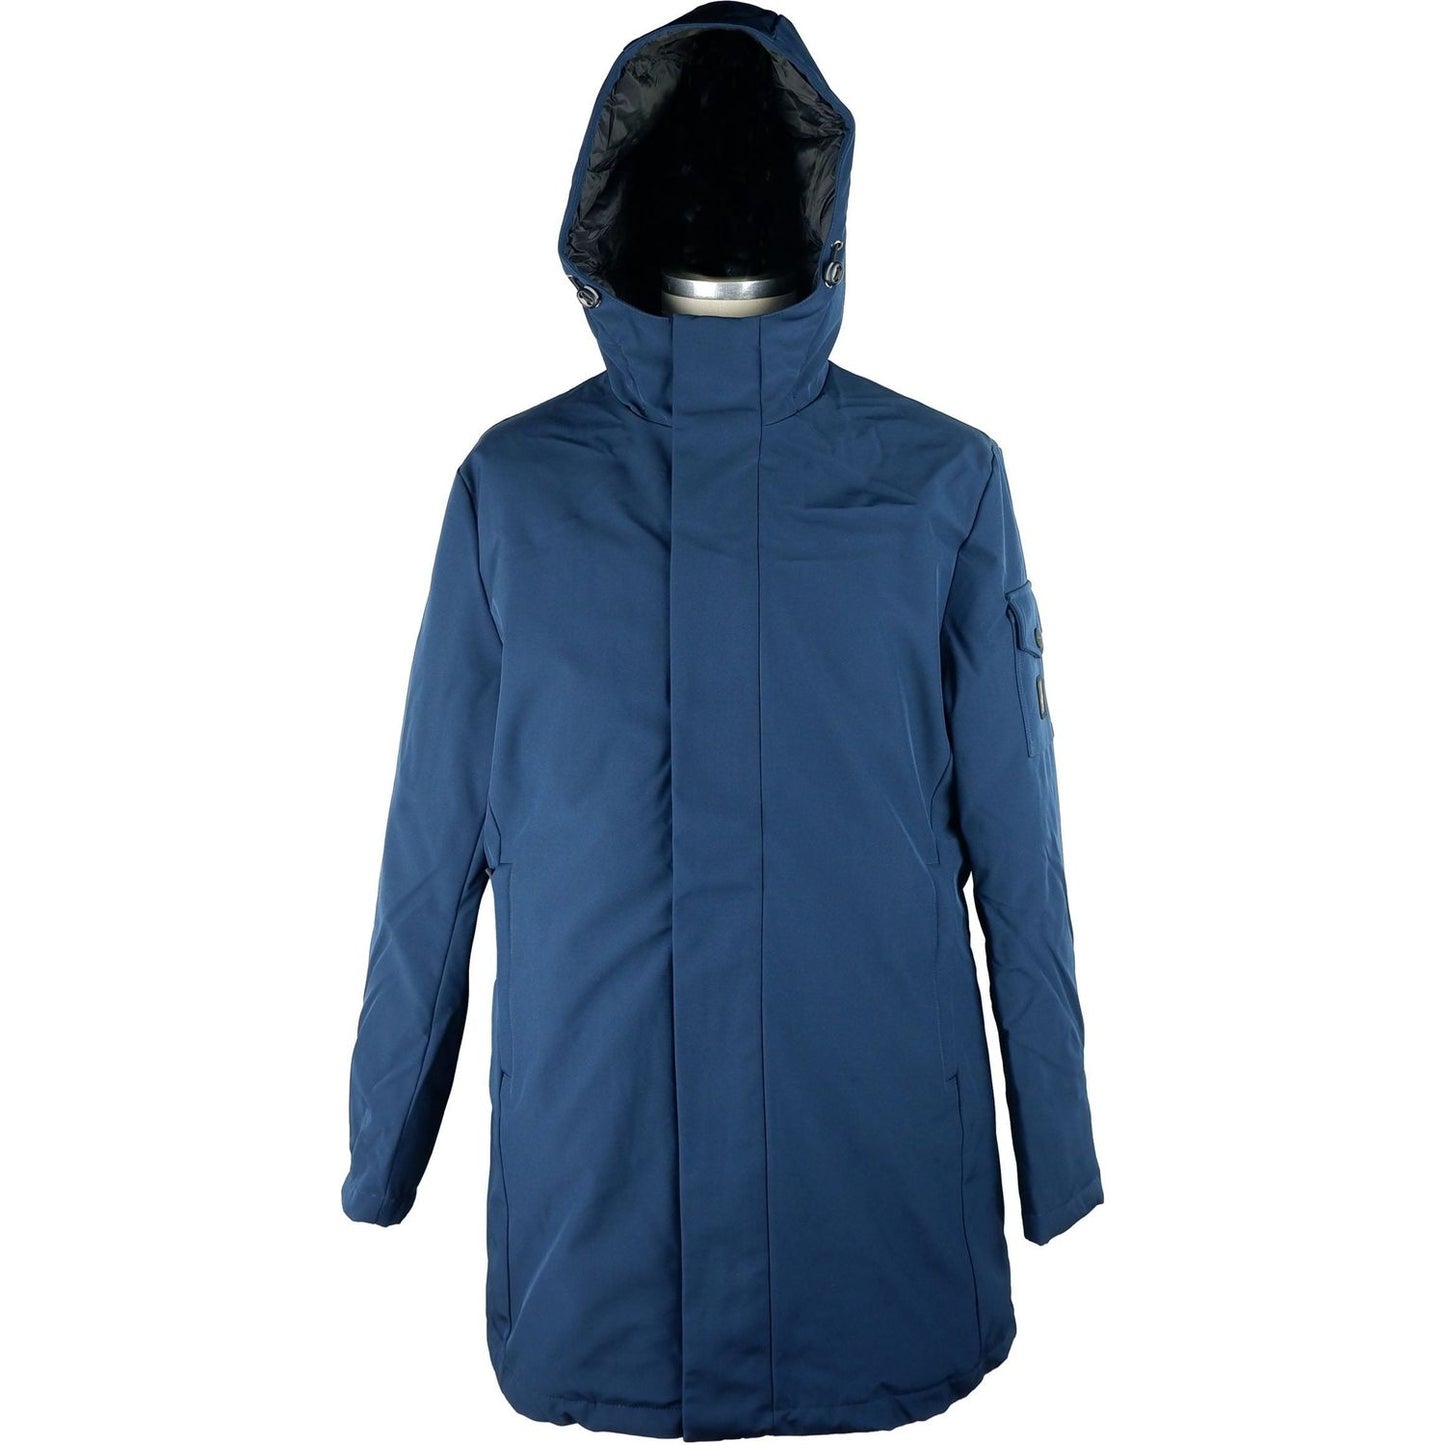 Refrigiwear Elegant Men's Long Jacket with Hood blue-polyester-jacket-3 MAN COATS & JACKETS stock_product_image_5264_1925046369-scaled-c9fb7e09-ab7.jpg